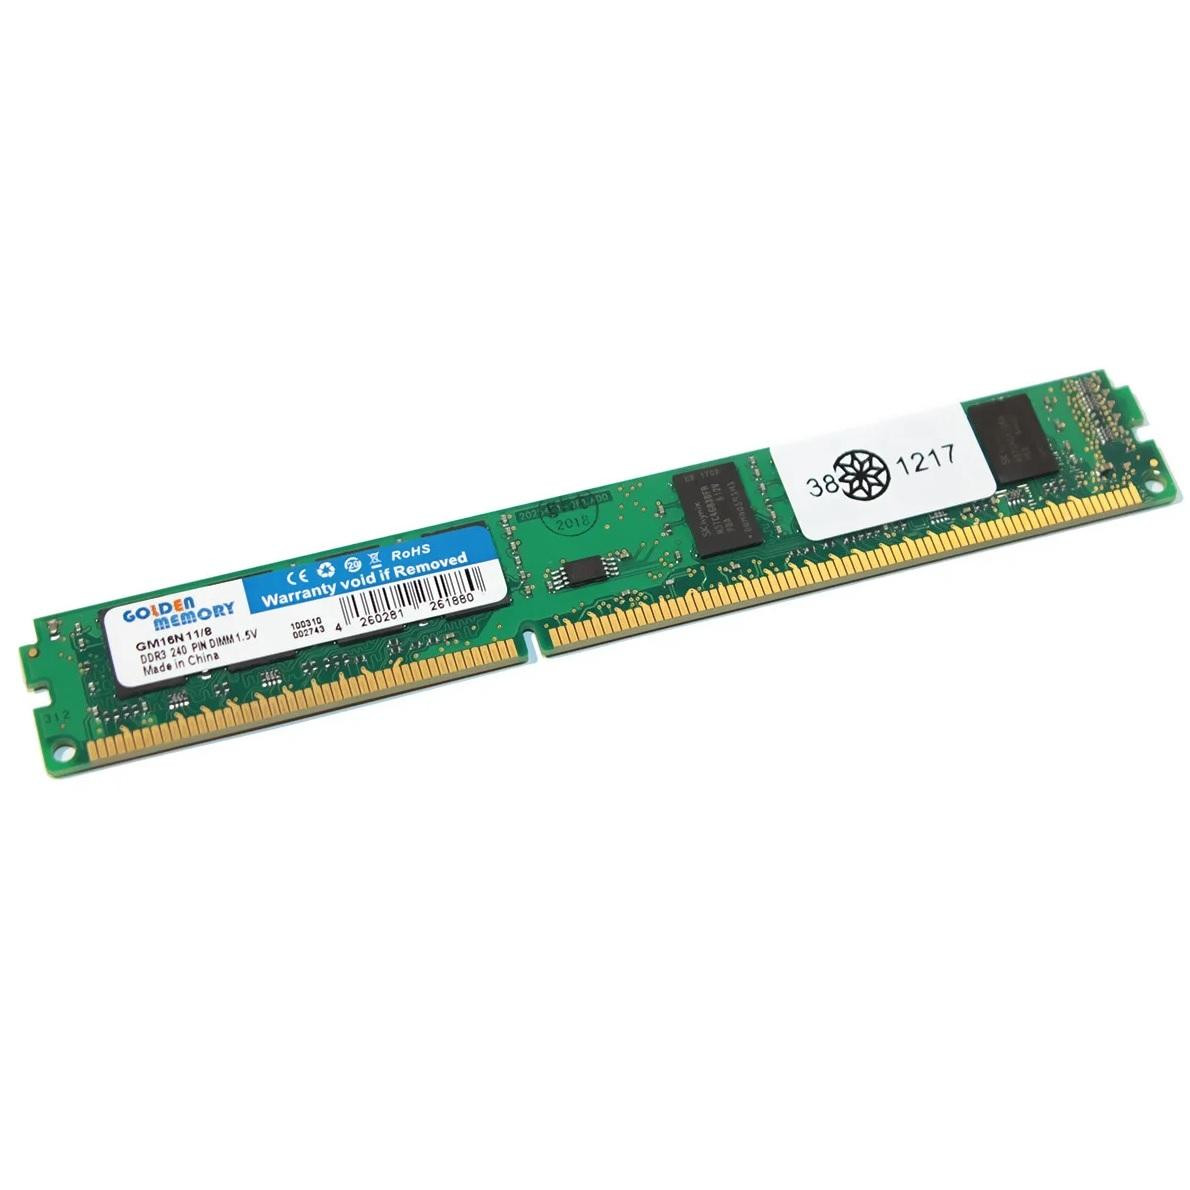 Golden Memory 8 GB DDR3 1600 MHz (GM16N11/8) - зображення 1